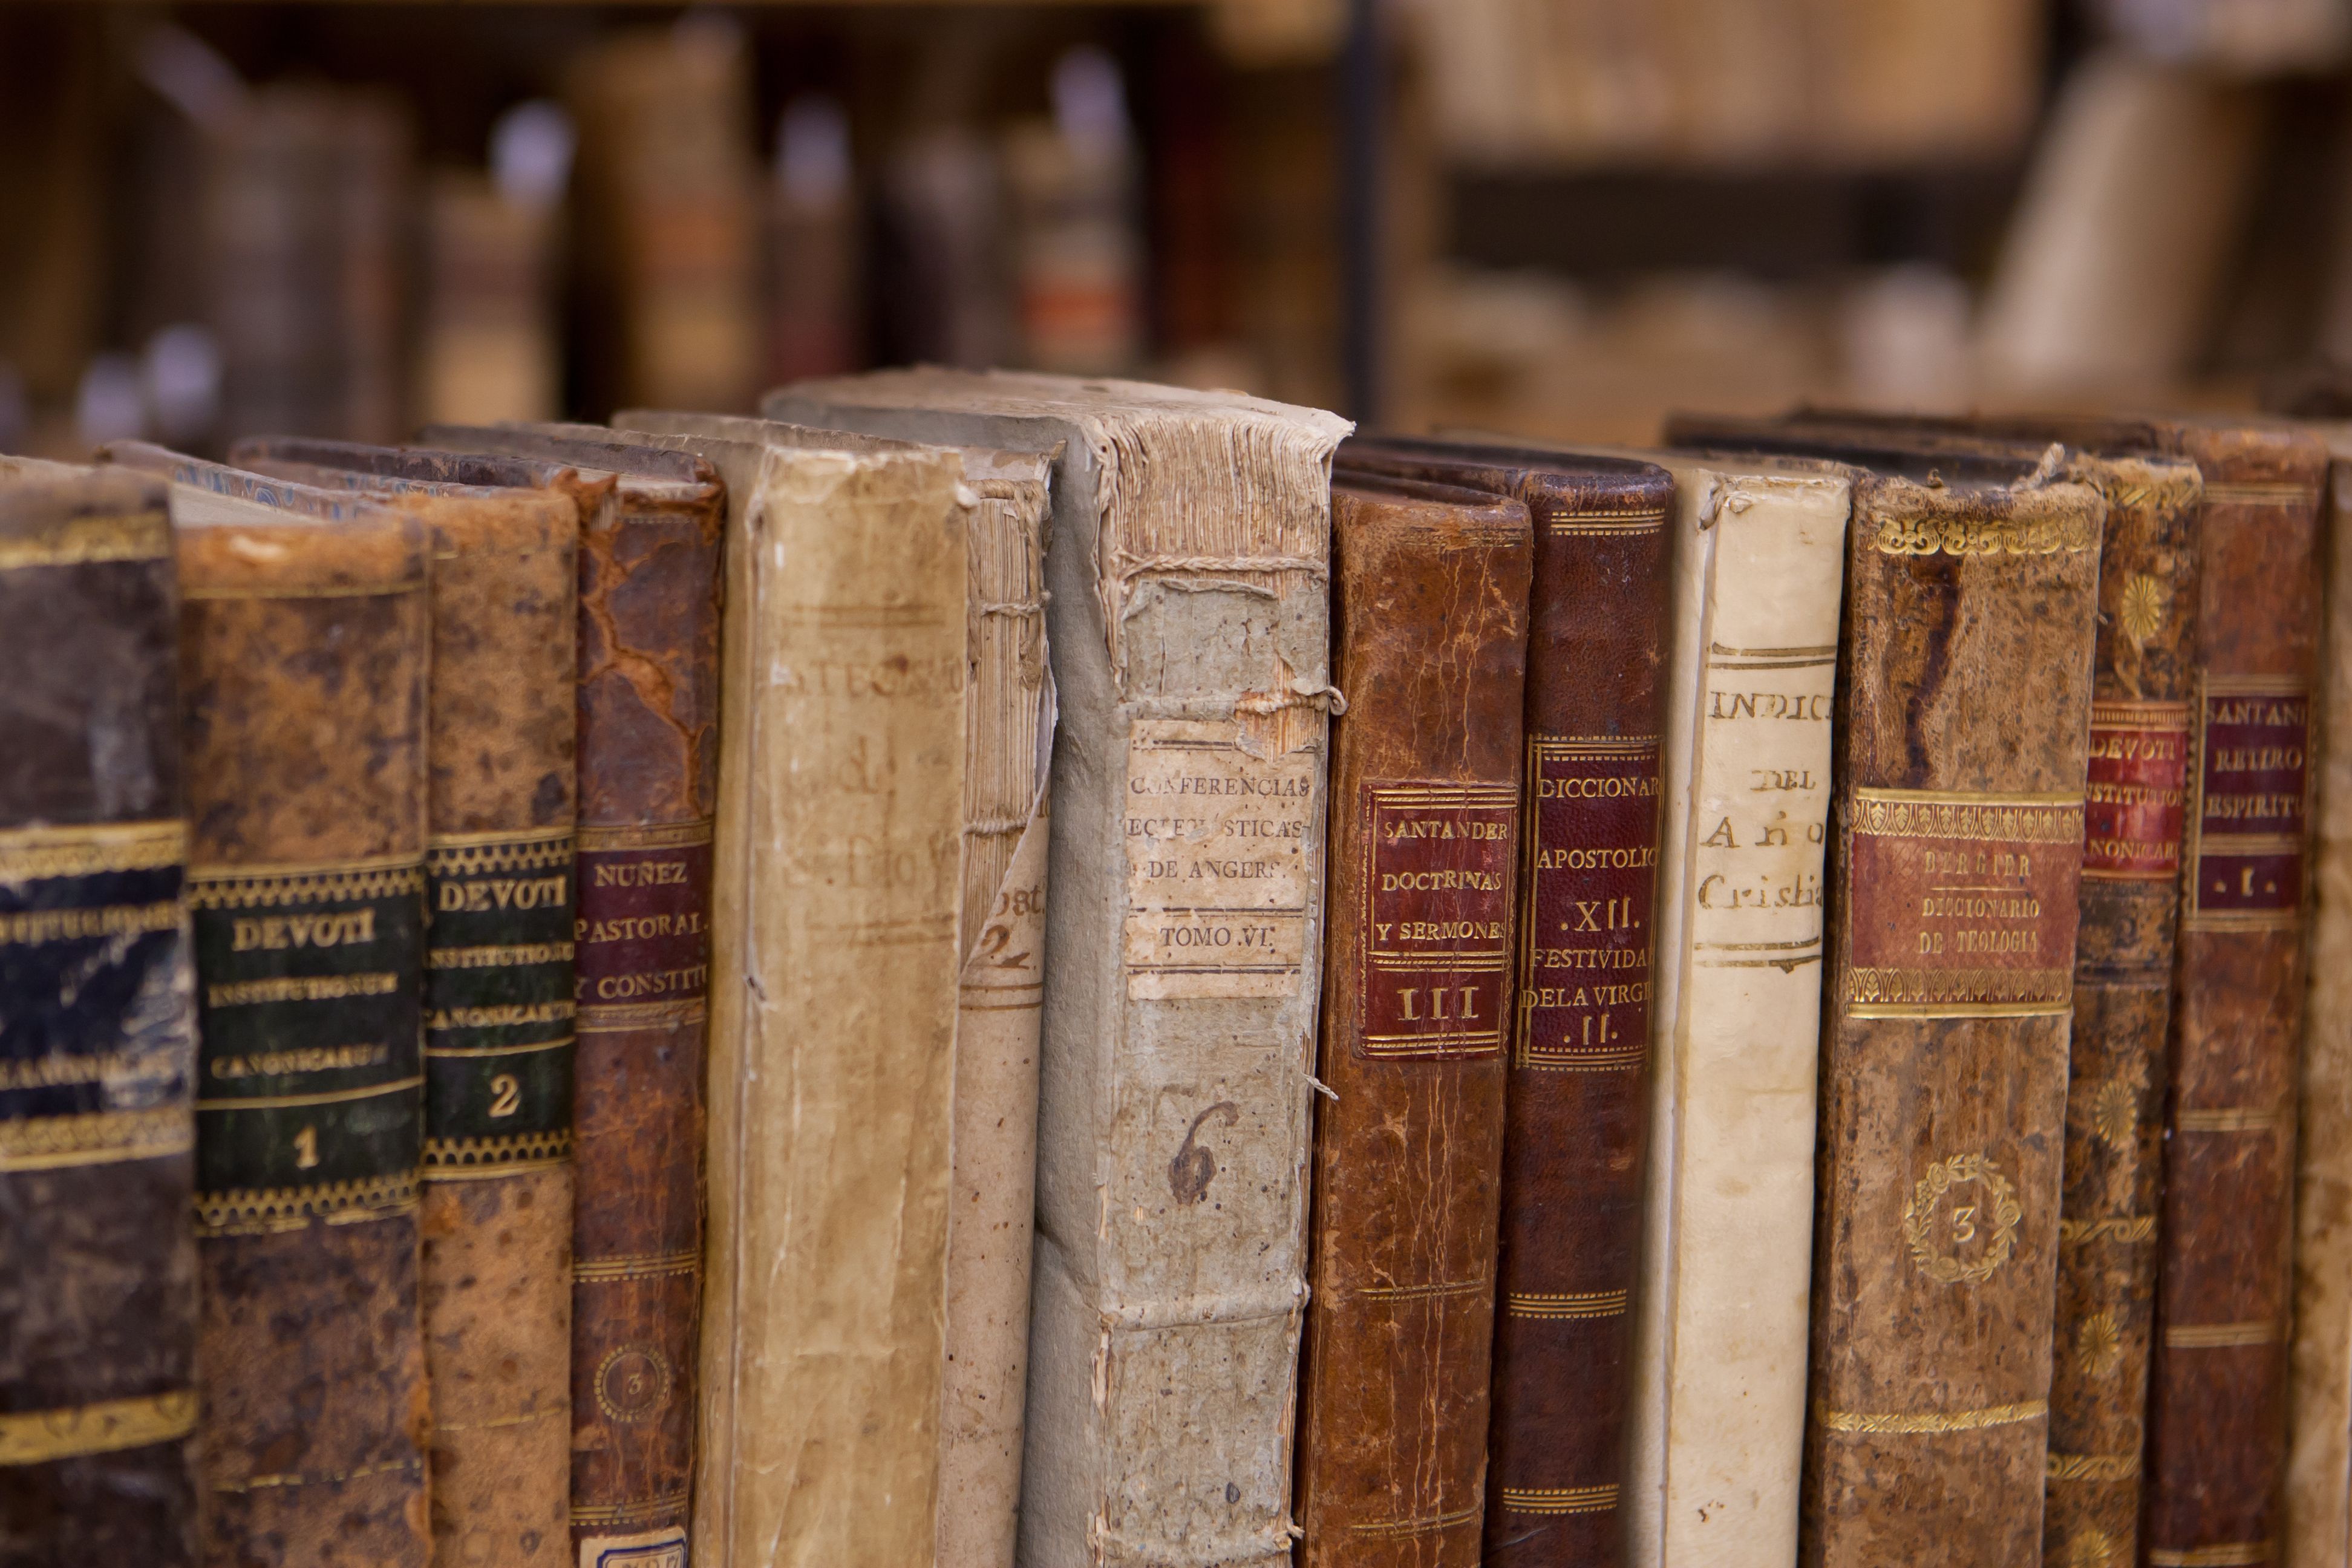 Libros antiguos biblioteca / Flickr